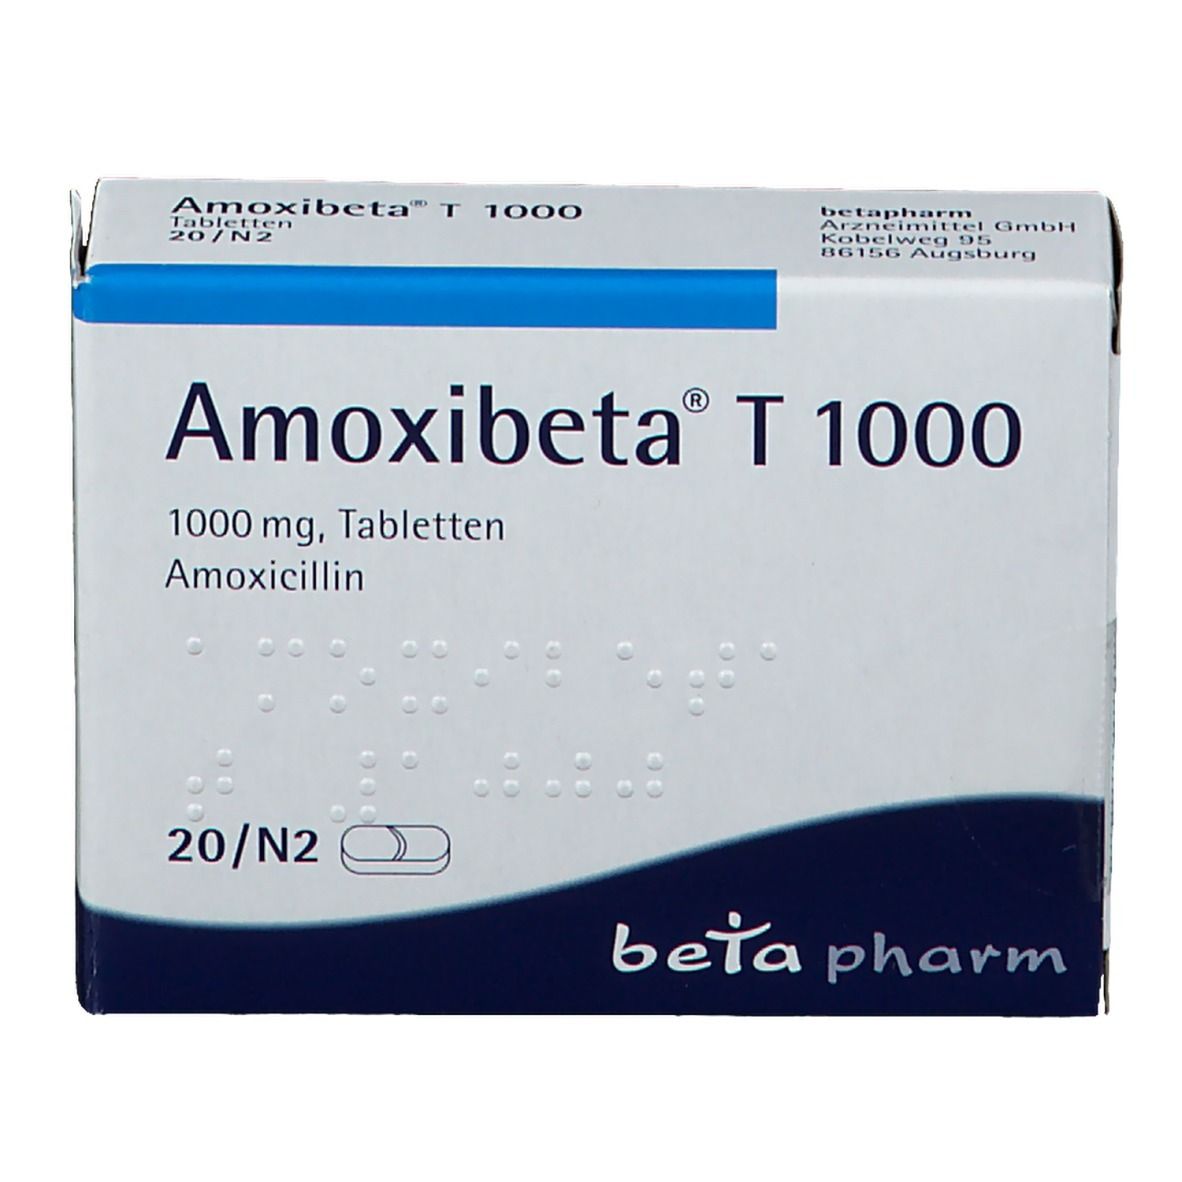 Amoxibeta® T 1000